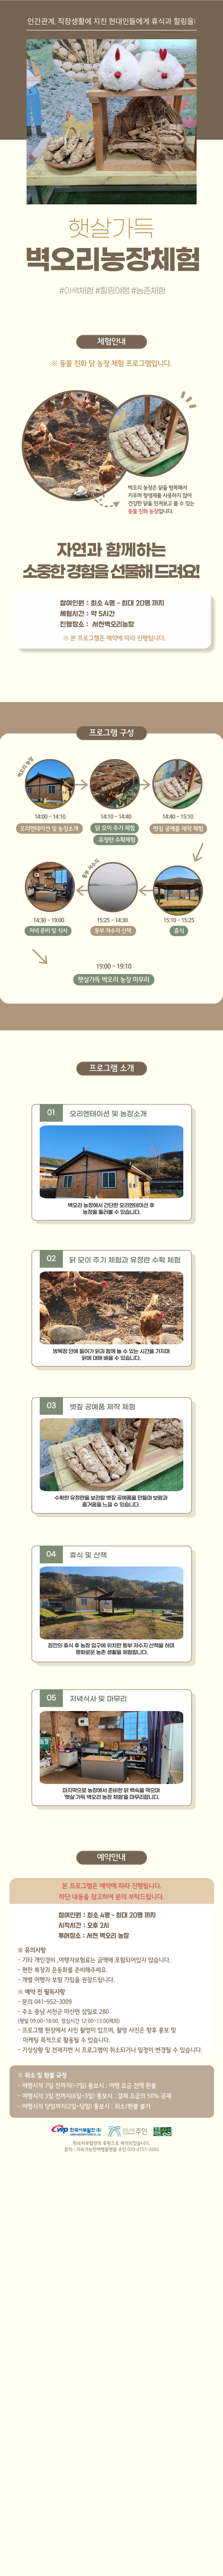 [충남 서천] 친환경 농장체험 서천 벽오리농장 상세정보